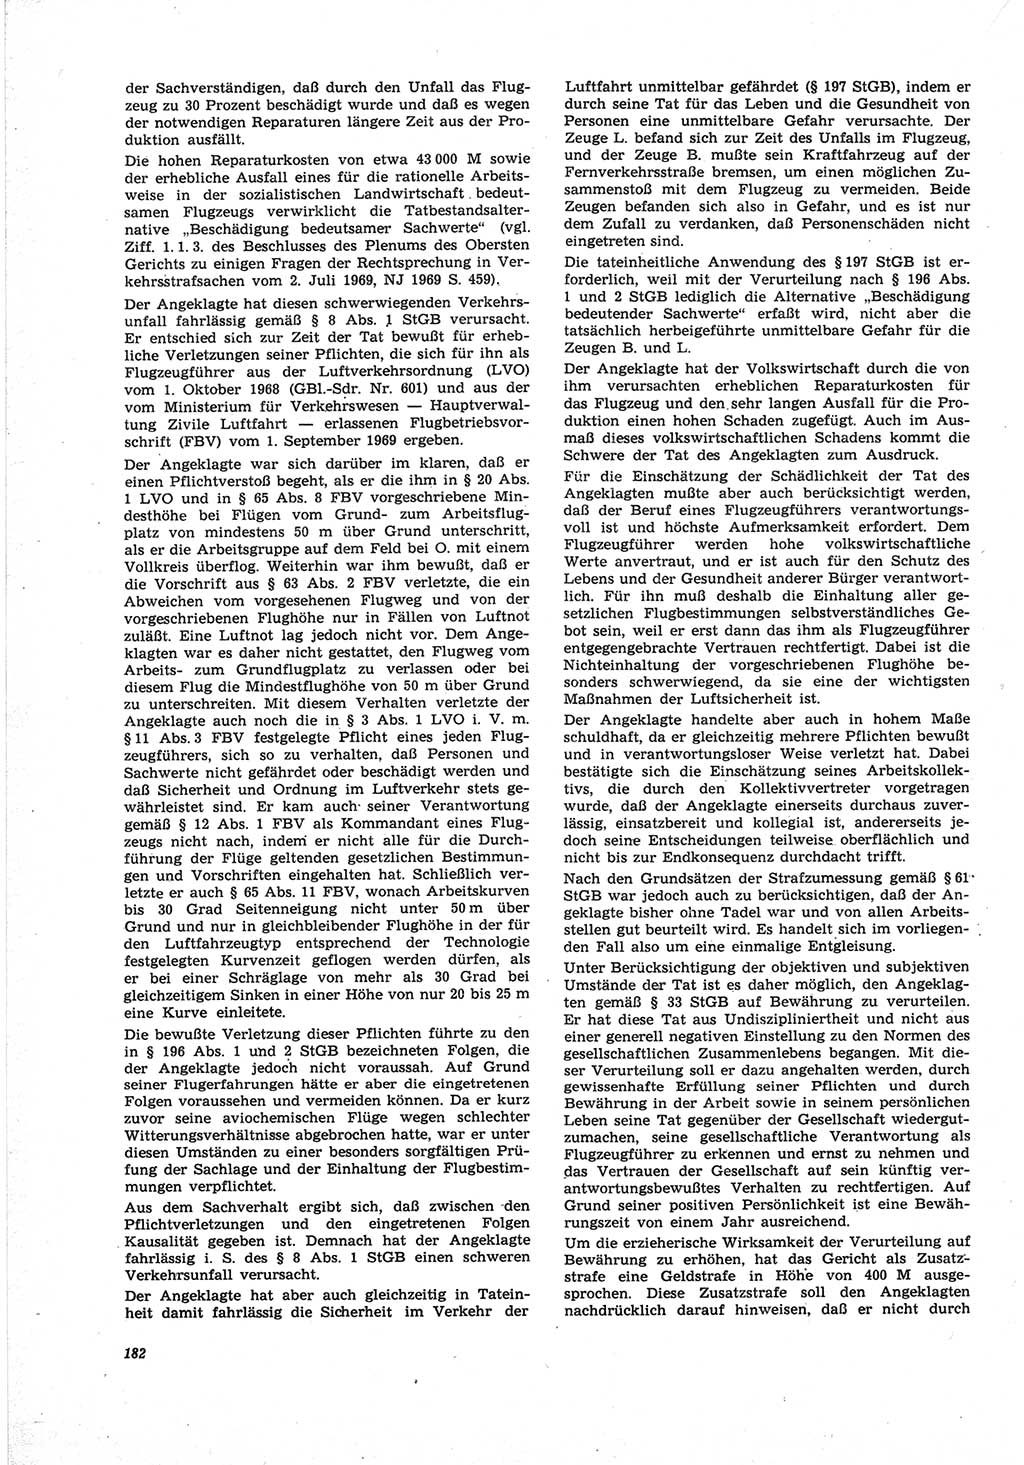 Neue Justiz (NJ), Zeitschrift für Recht und Rechtswissenschaft [Deutsche Demokratische Republik (DDR)], 25. Jahrgang 1971, Seite 182 (NJ DDR 1971, S. 182)